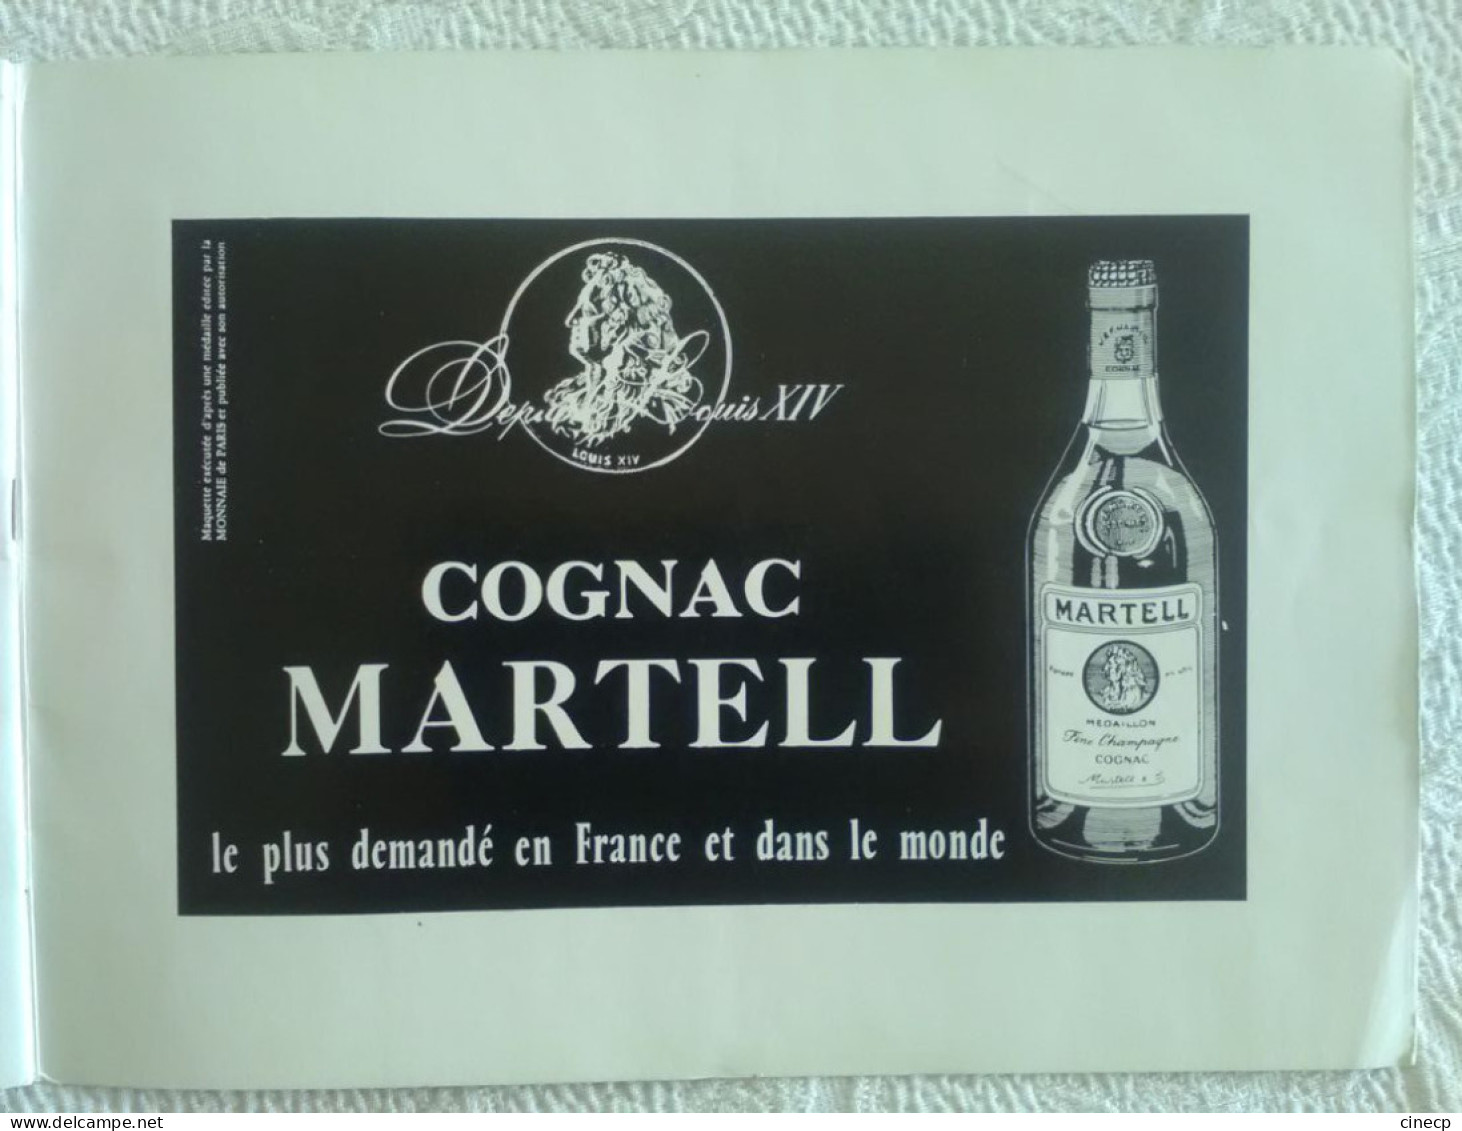 PROGRAMME DE CONCERT ORIGINAL CHANTEUR Récital 1963 Yves MONTAND Tournée internationale superbes photos publicité parfum